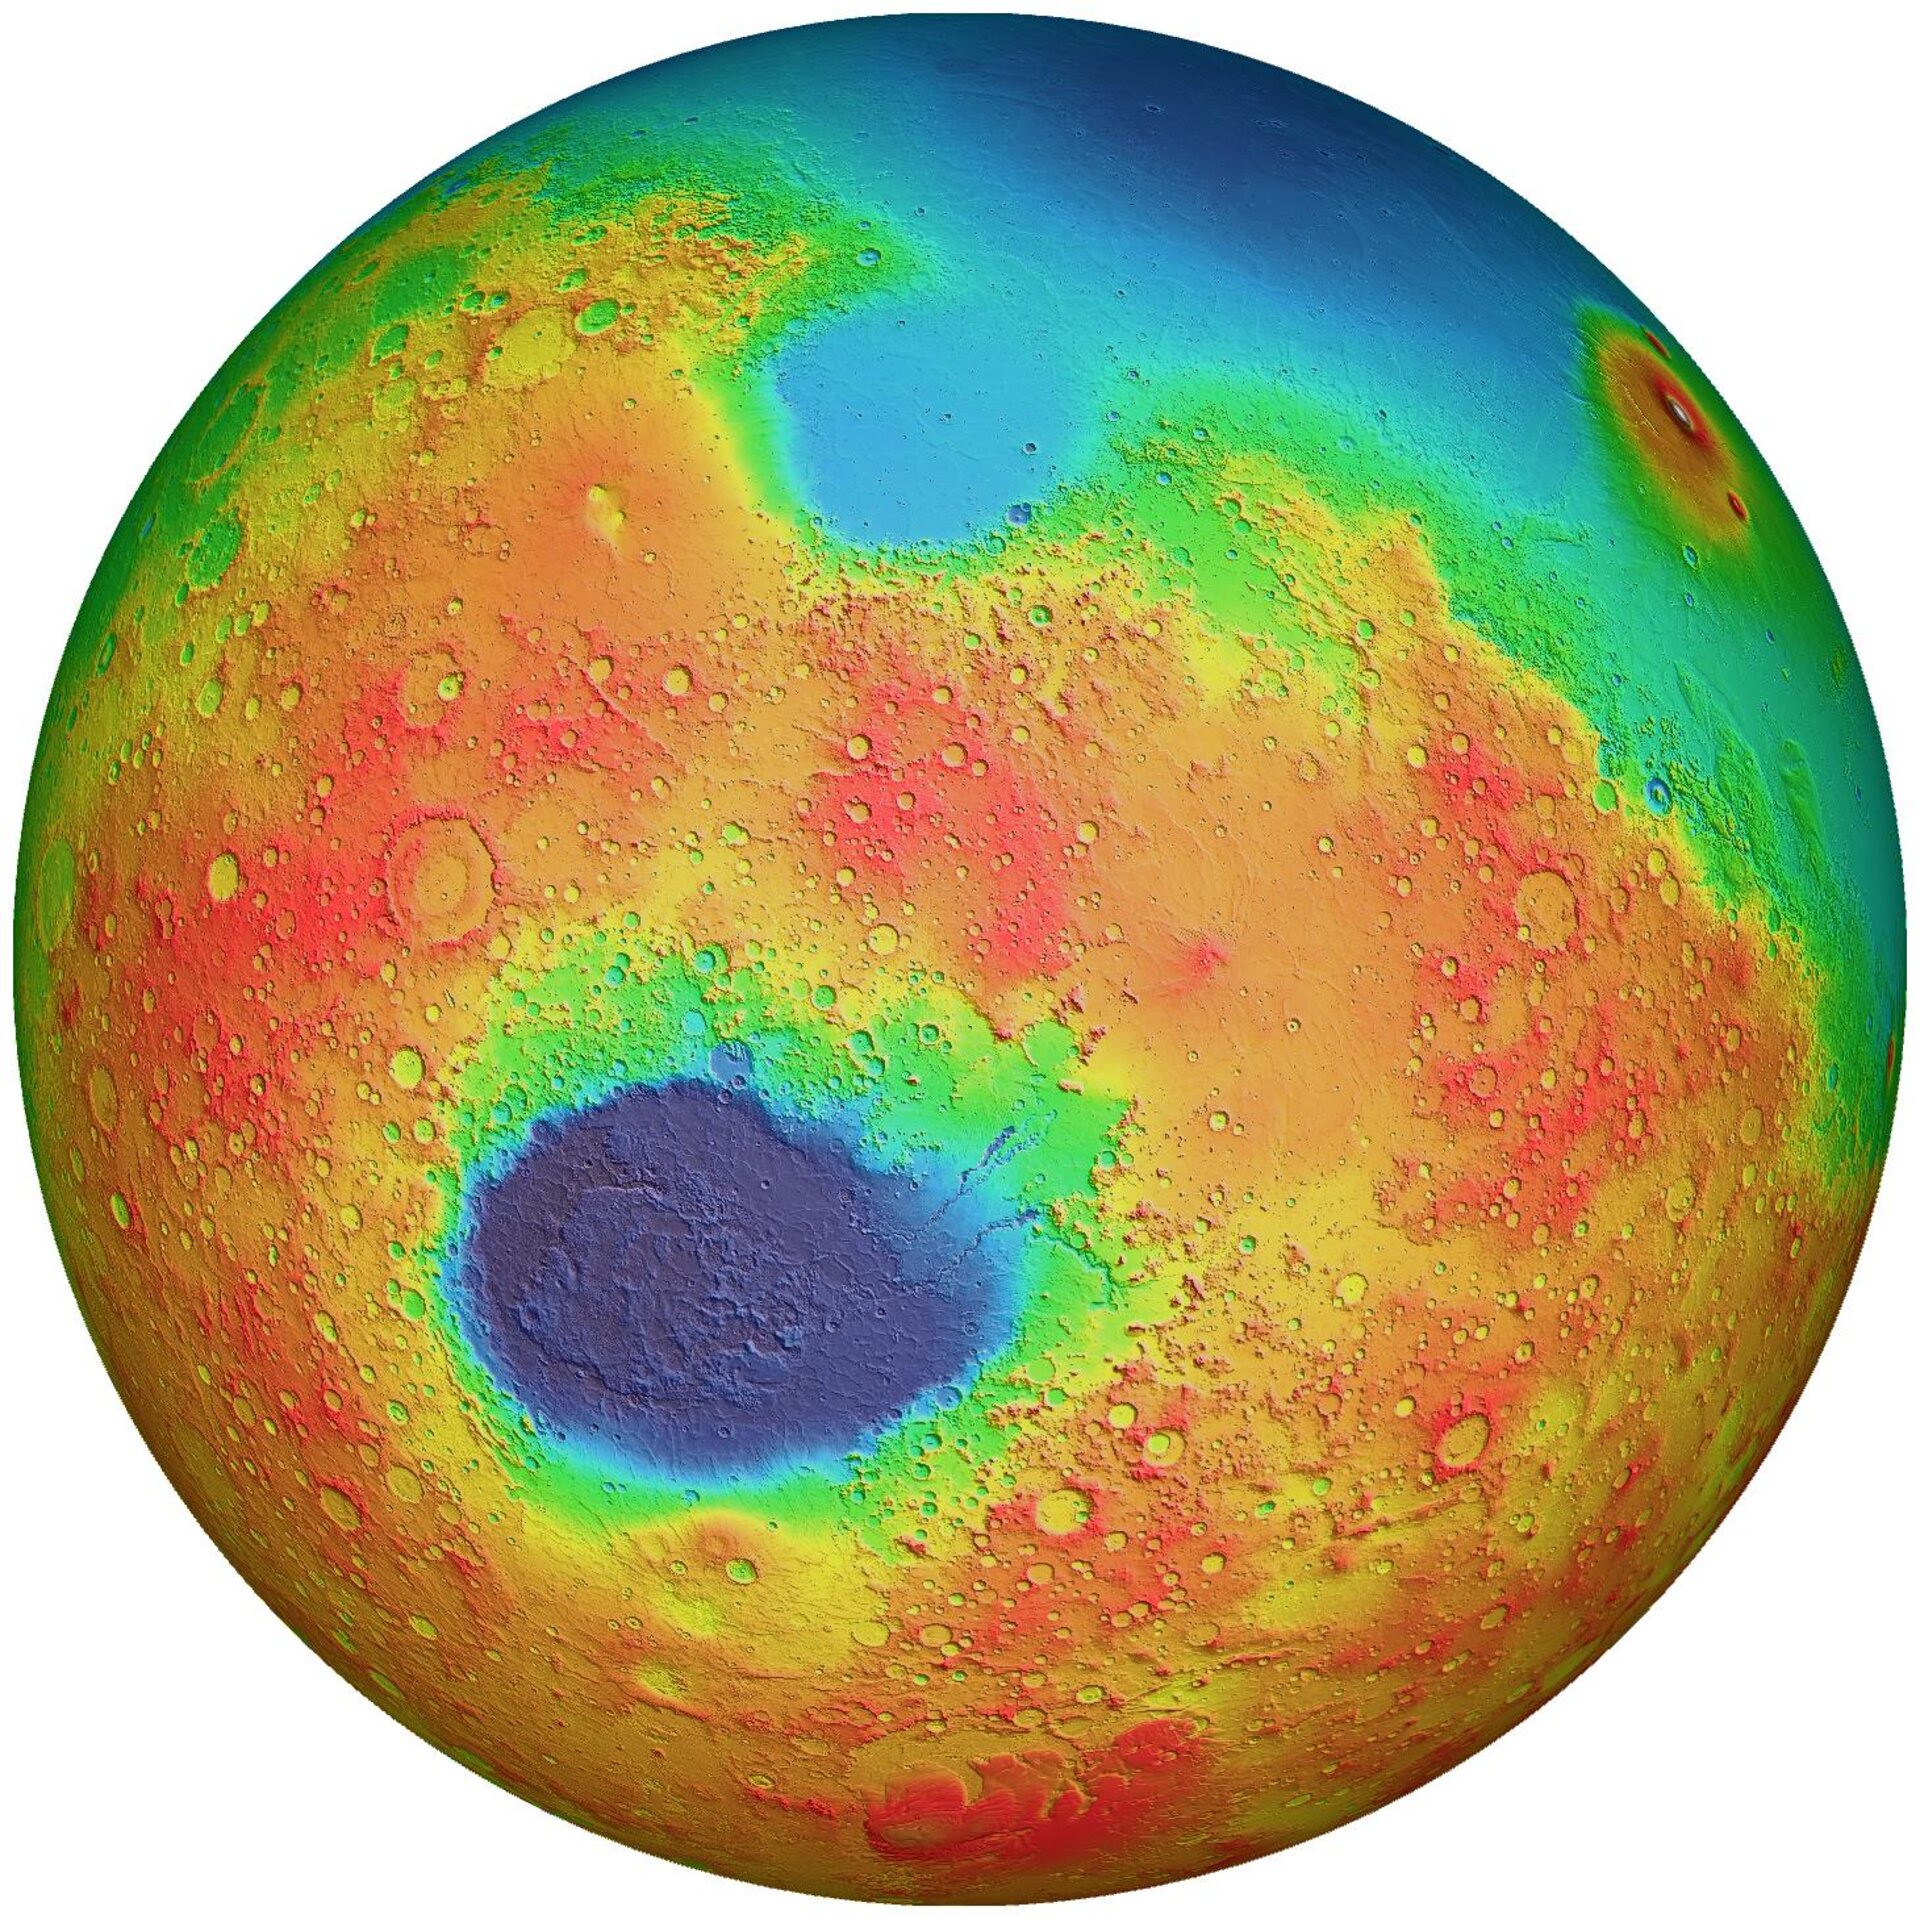 Hellas Basin on Mars. Credit: MOLA Science Team